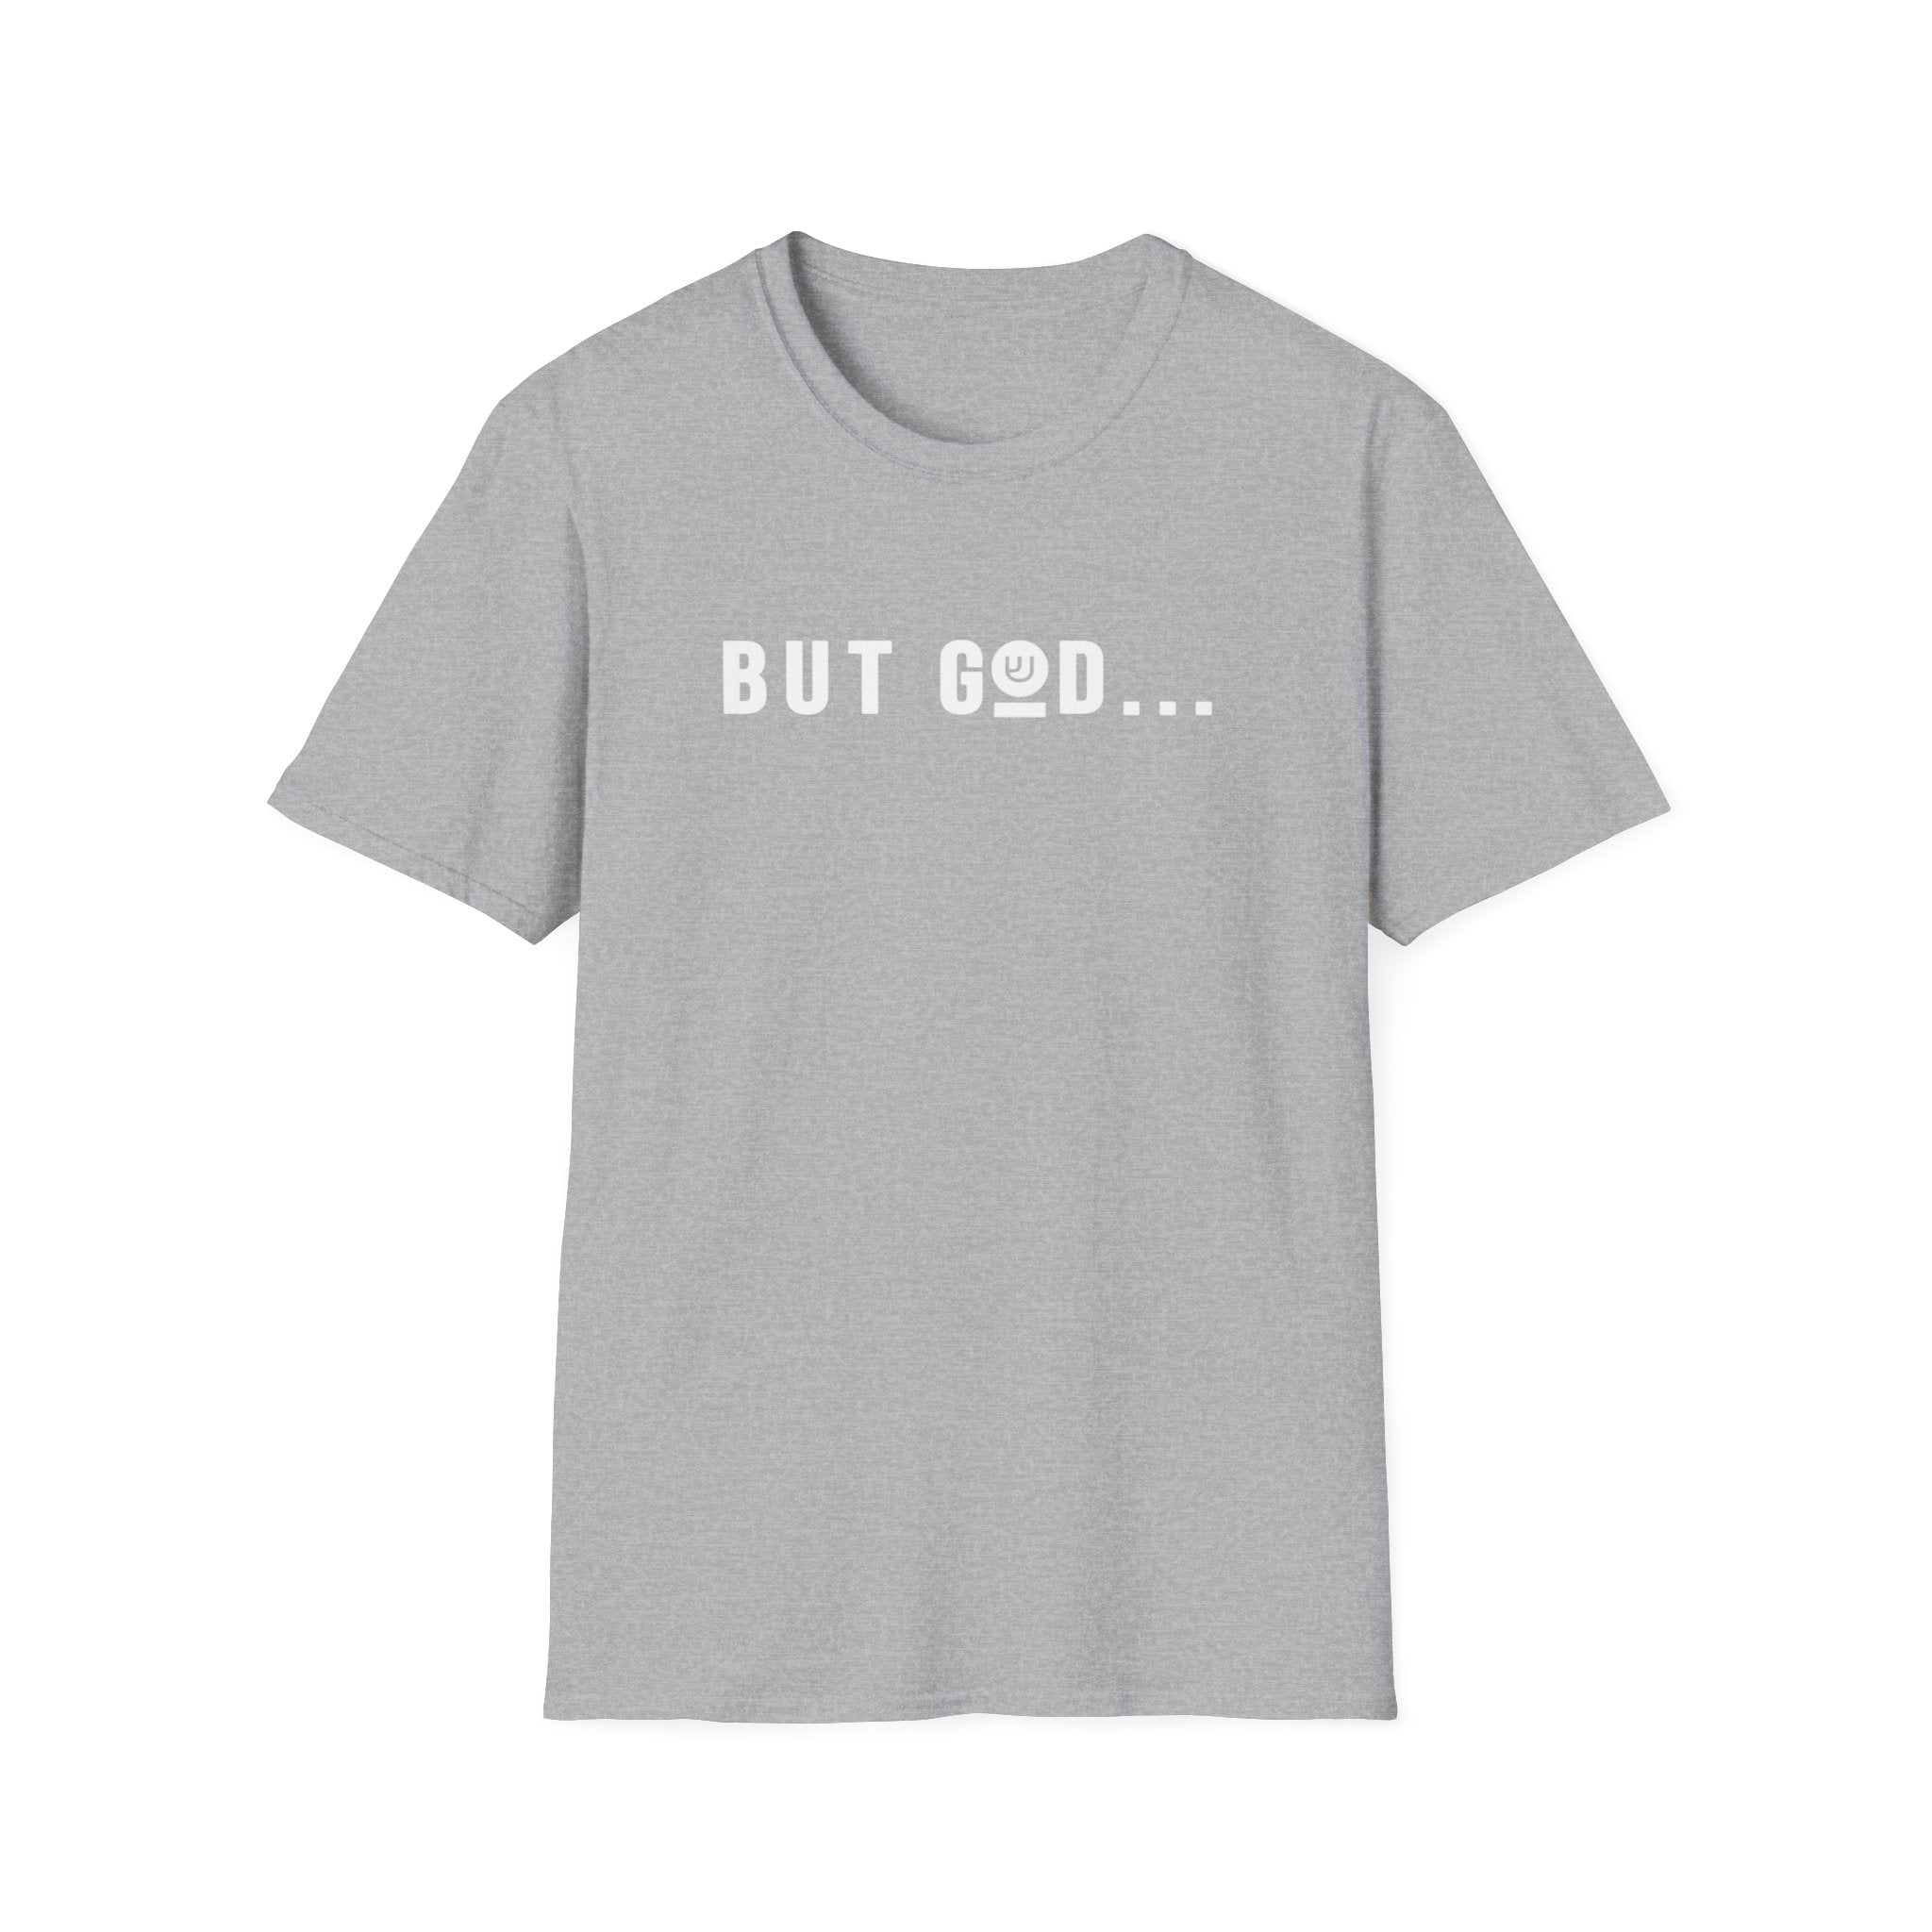 Bur God... Unisex Softstyle T-Shirt